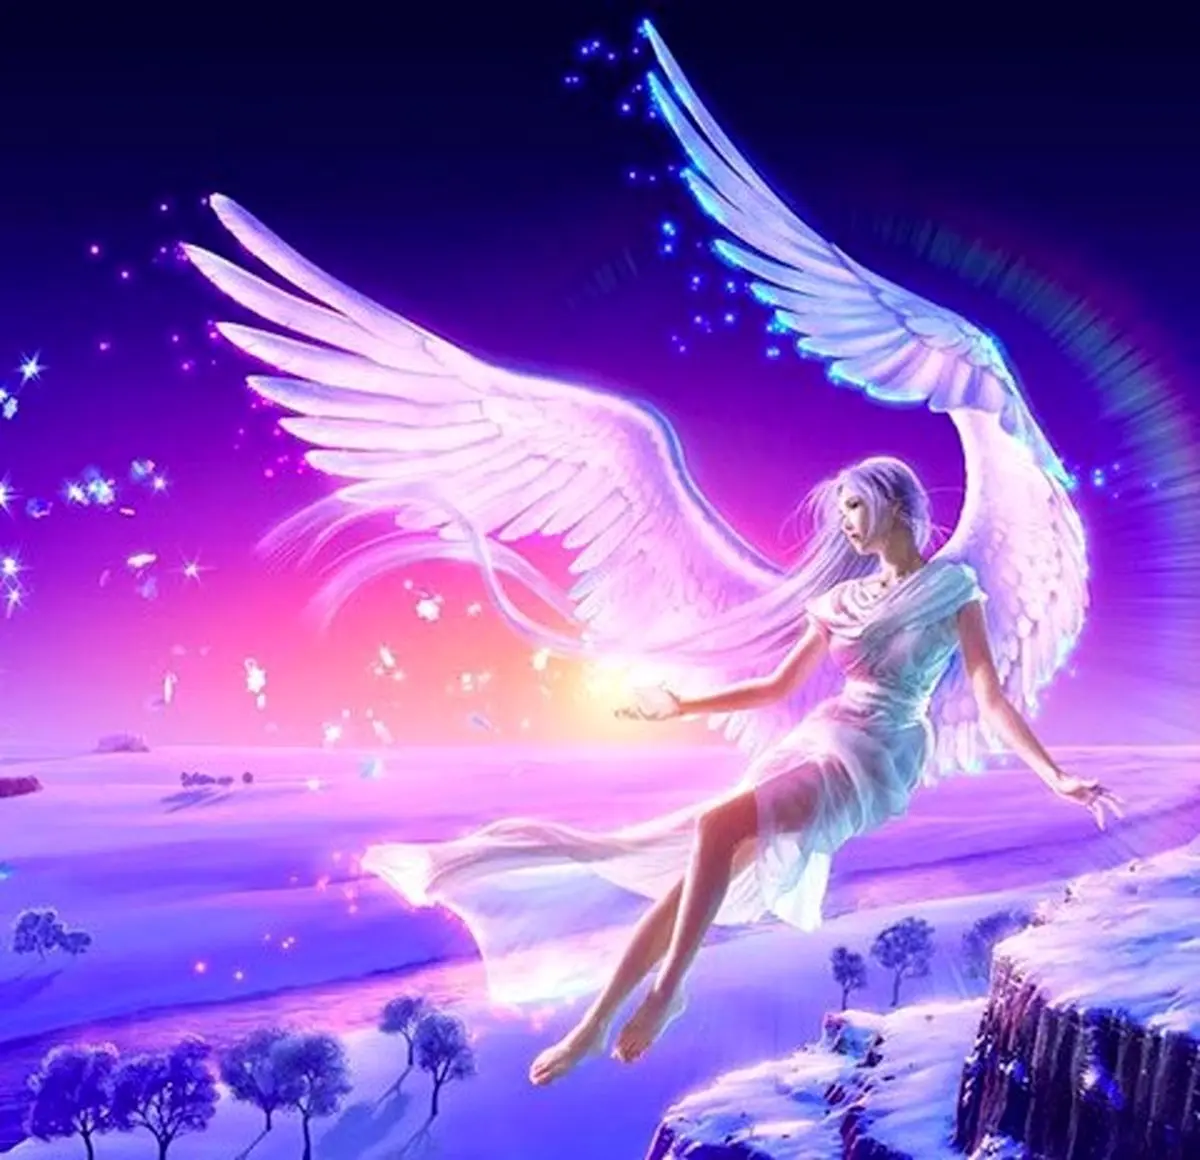 فال فرشتگان  18 آبان ماه | فرشتگان برای شما چه پیام مثبتی دارند؟